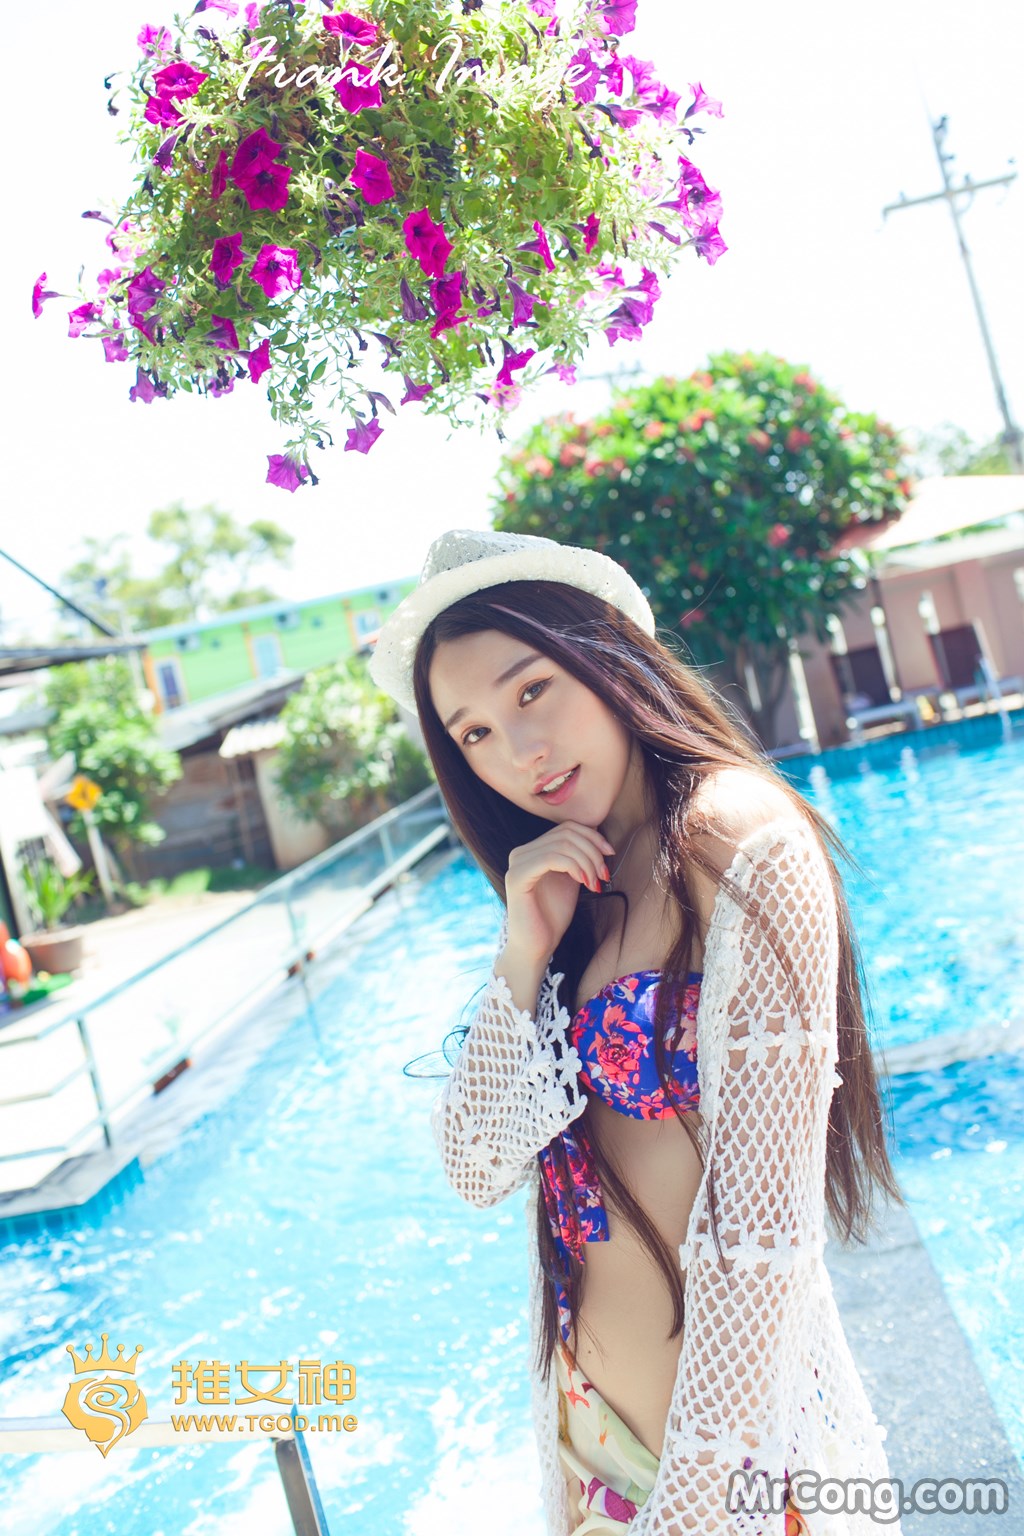 TGOD 2014-08-30: Model Lynn (刘 奕宁) (59 photos) photo 1-5